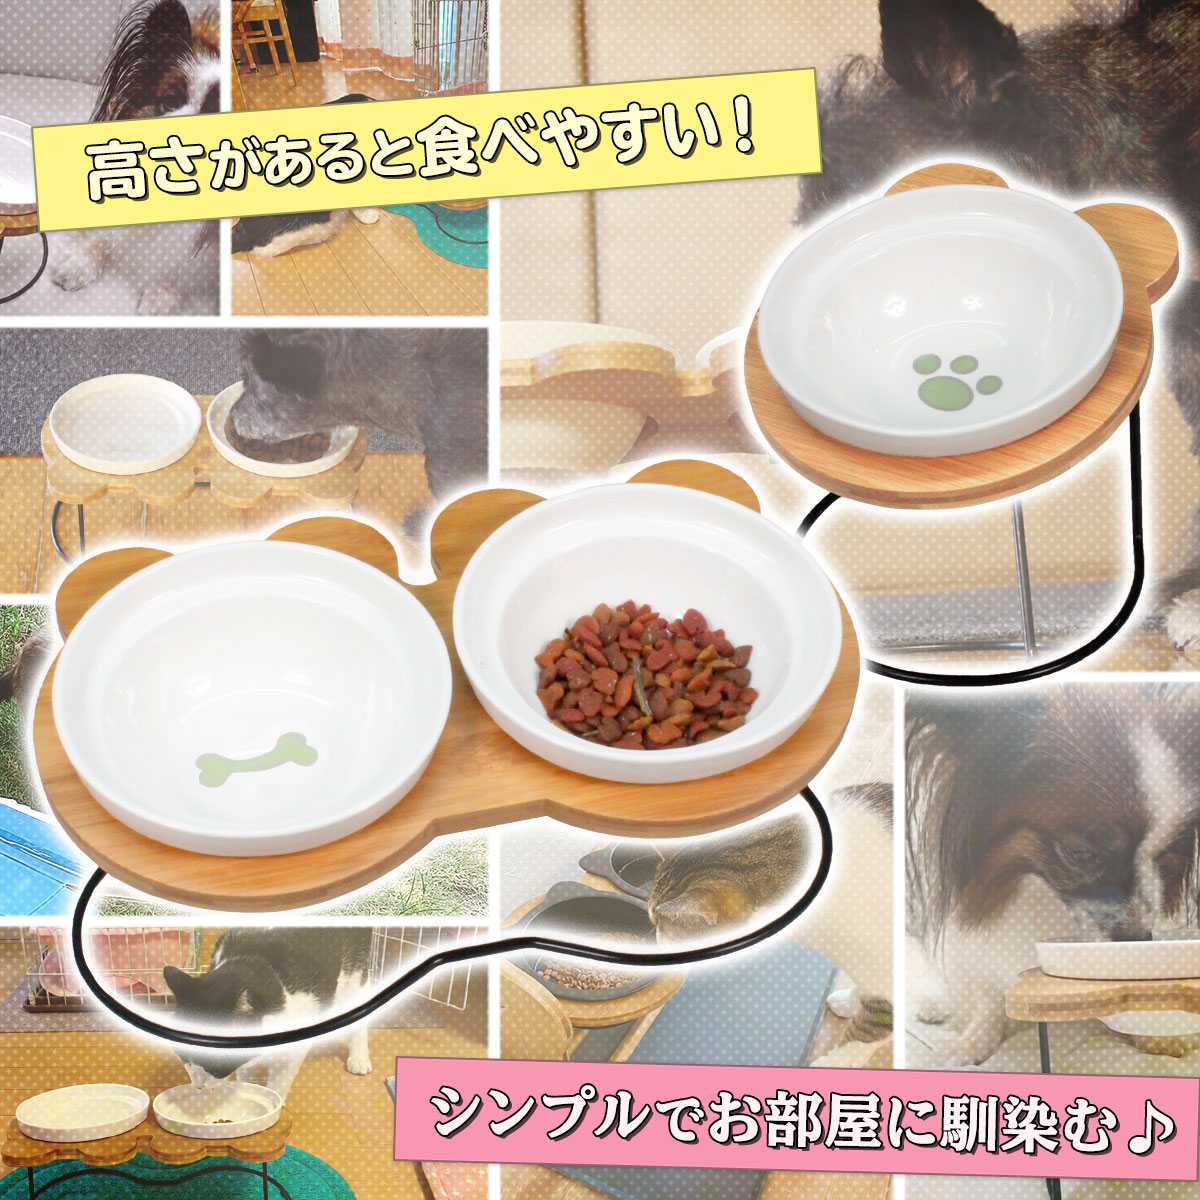 えさ皿 猫 犬 食器 えさ 皿 餌入れ フードボウル ペット 猫用 犬用 ご飯皿 お皿 水飲み 食器台 食べやすい 傾斜 陶器 アイアンバンブースタンドシングル